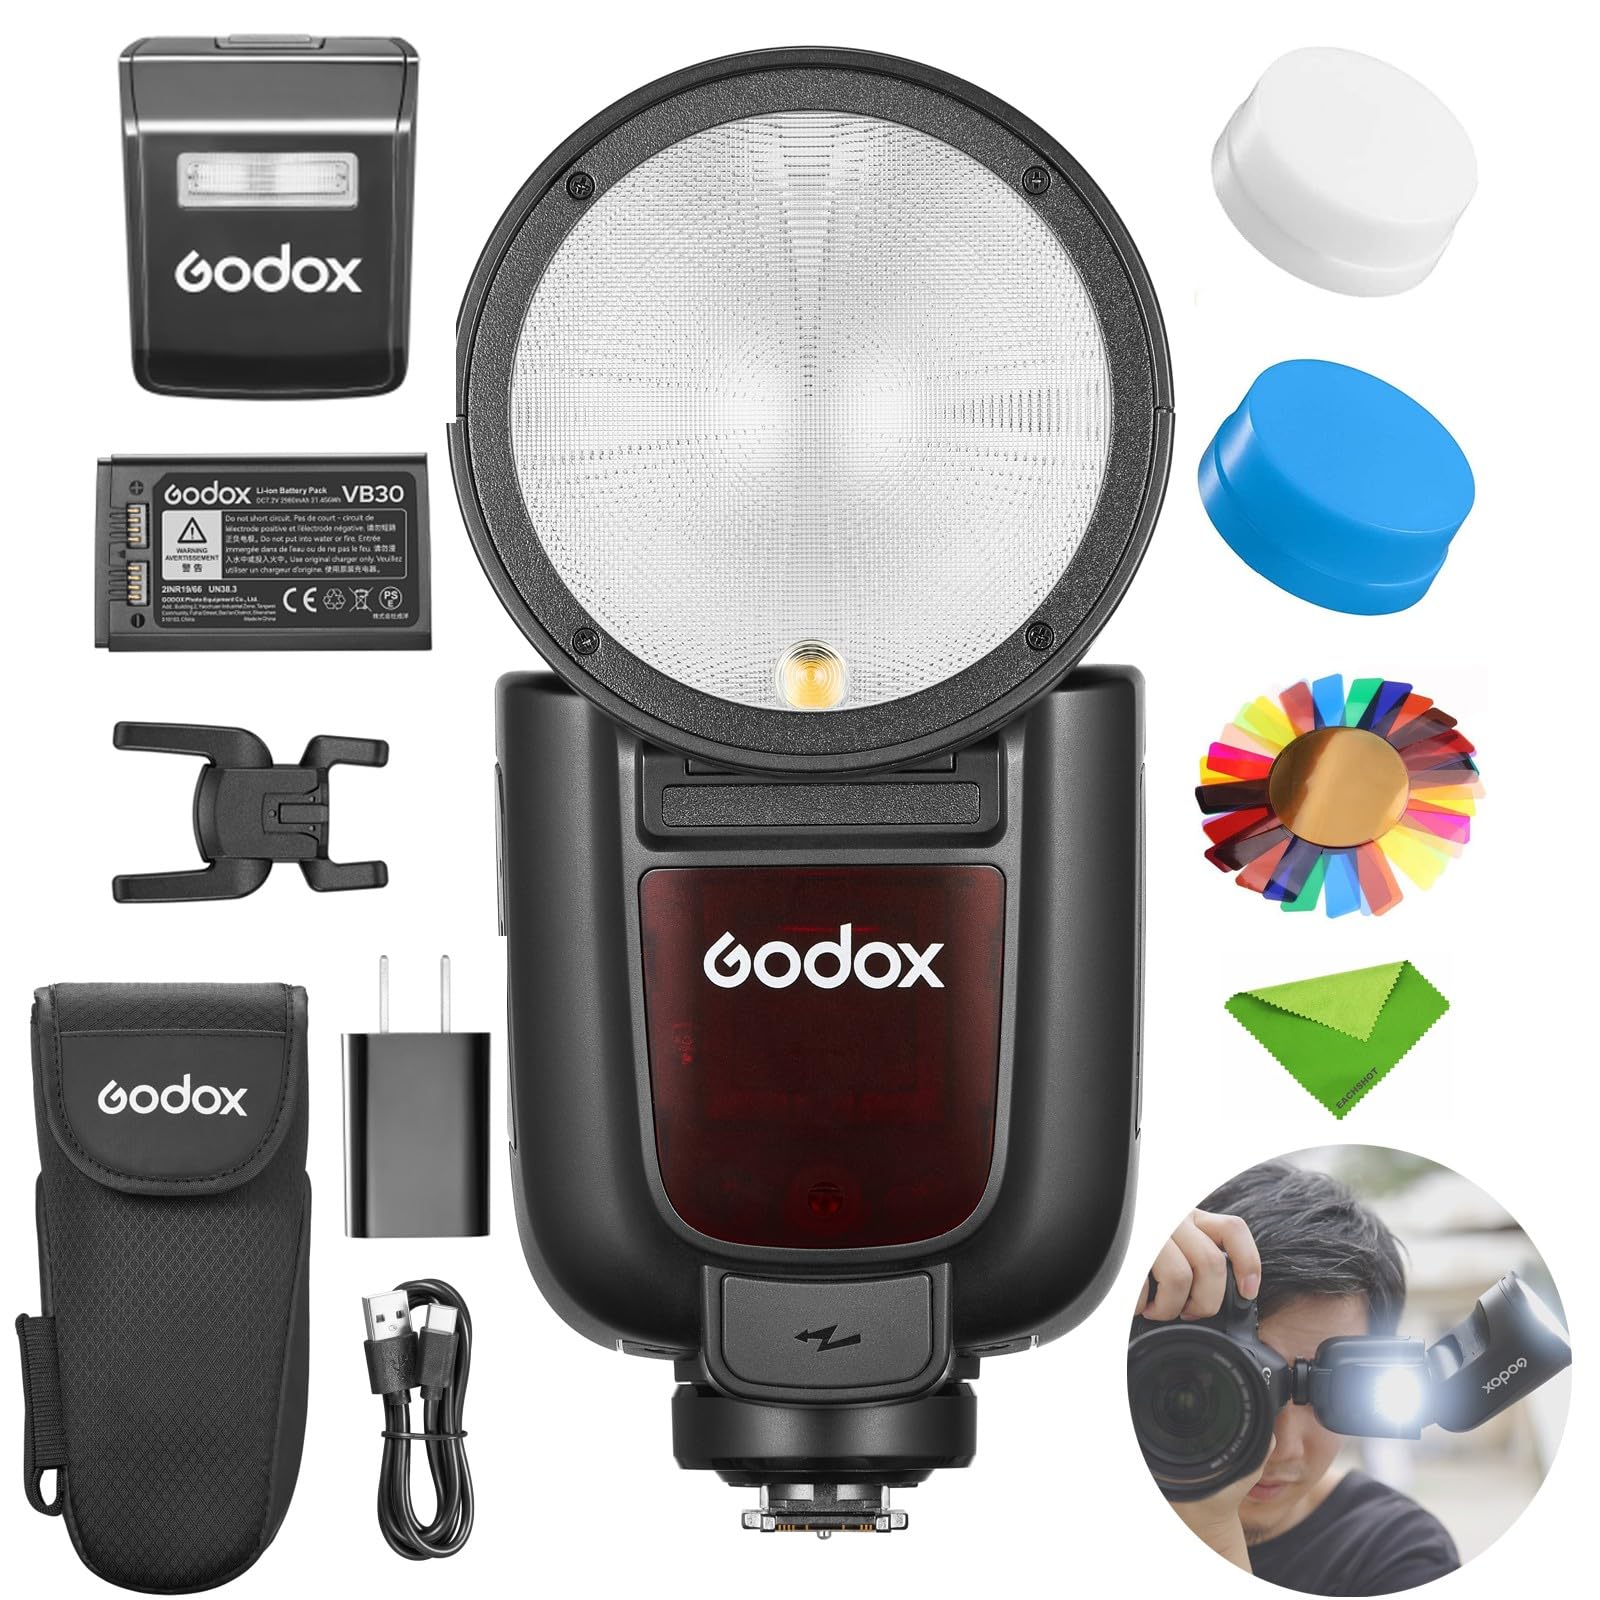 Godox正規代理Godox V1Pro-F フラッシュ富士フイルムカメラ用,TTL スピードライト1/8000 HSS 500 フルパワーフラッシュ、1.3 秒のリサイクルタイム、2.4G ワイヤレス、外部フラッシュ SU-1 付き(V1Pro F)